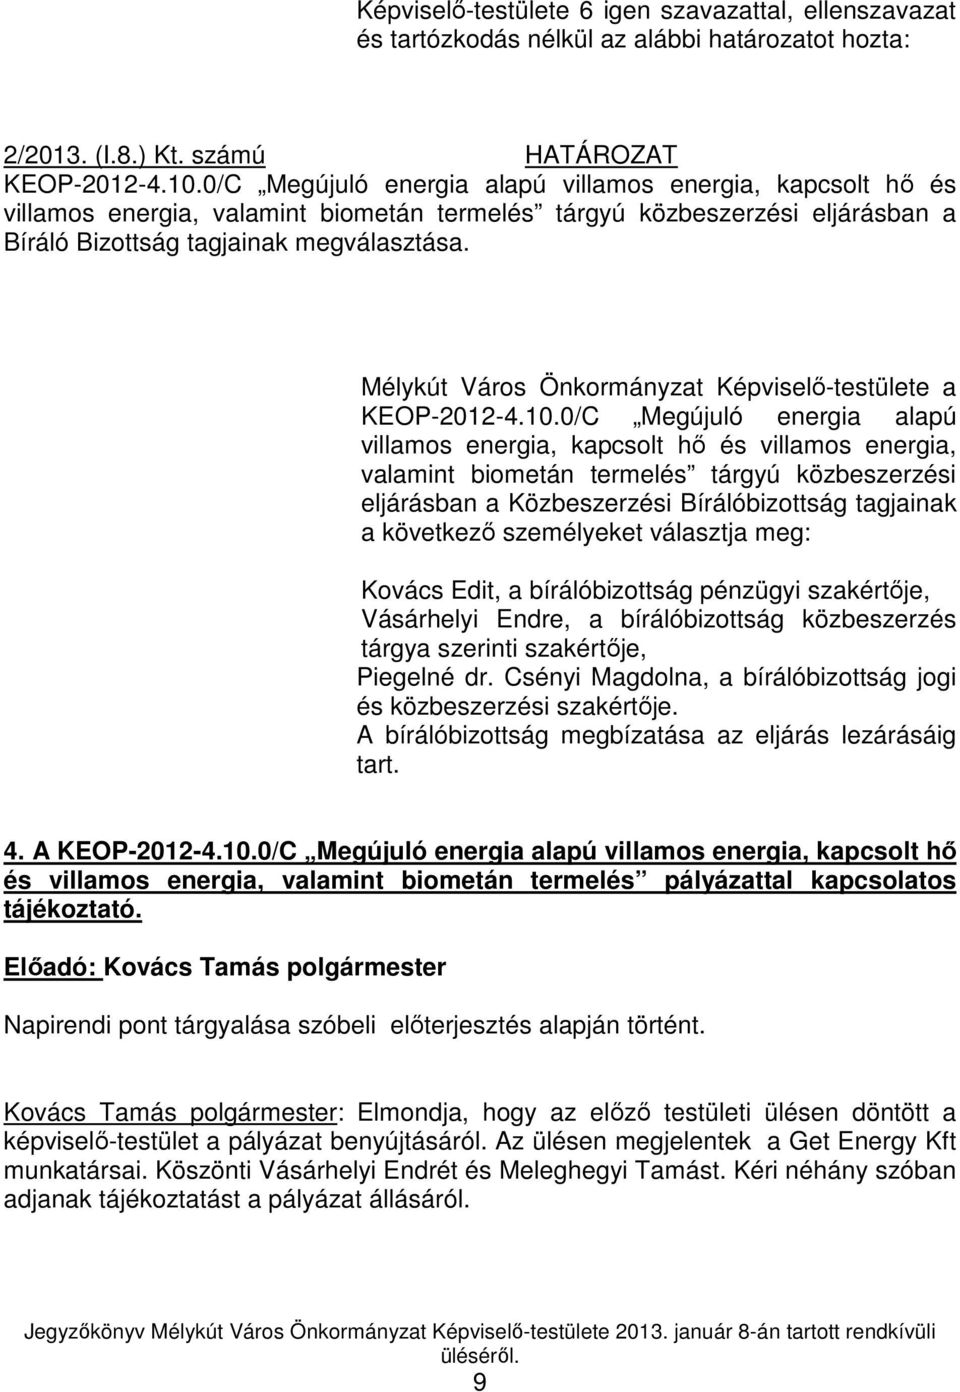 Mélykút Város Önkormányzat Képviselı-testülete a KEOP-2012-4.10.